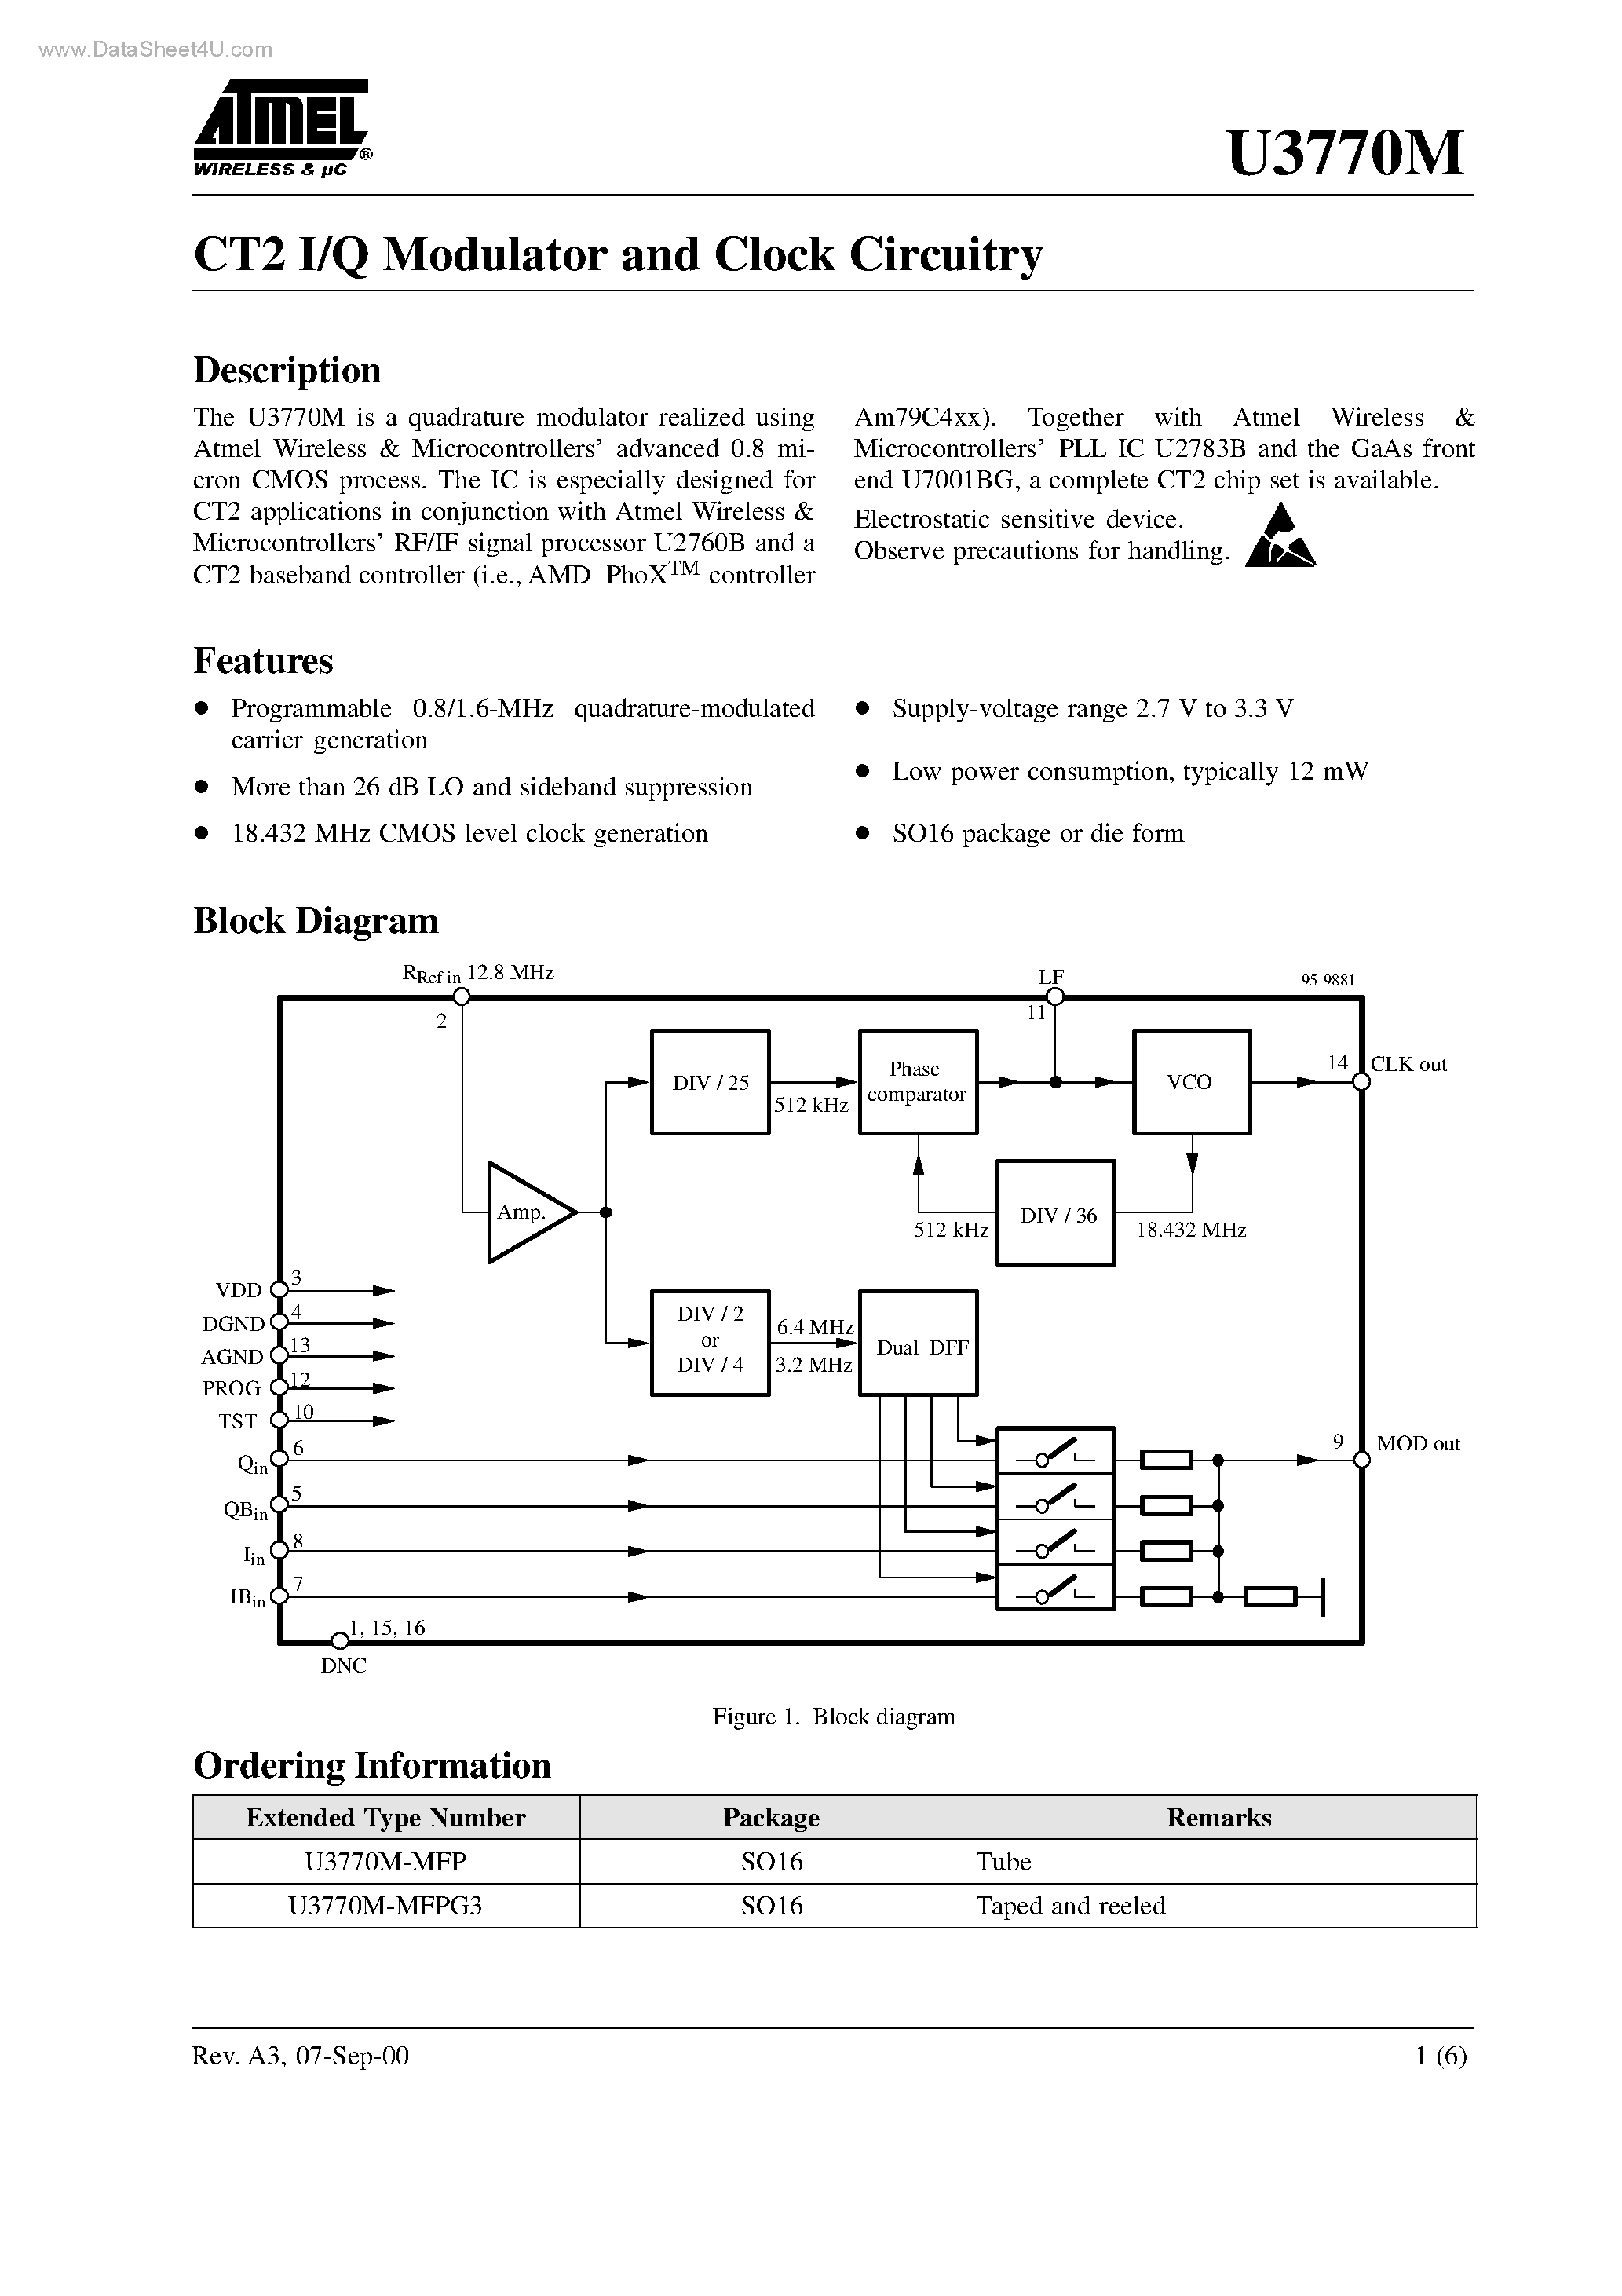 Datasheet U3770M - CT2 I/Q Modulator and Clock Circuitry page 1